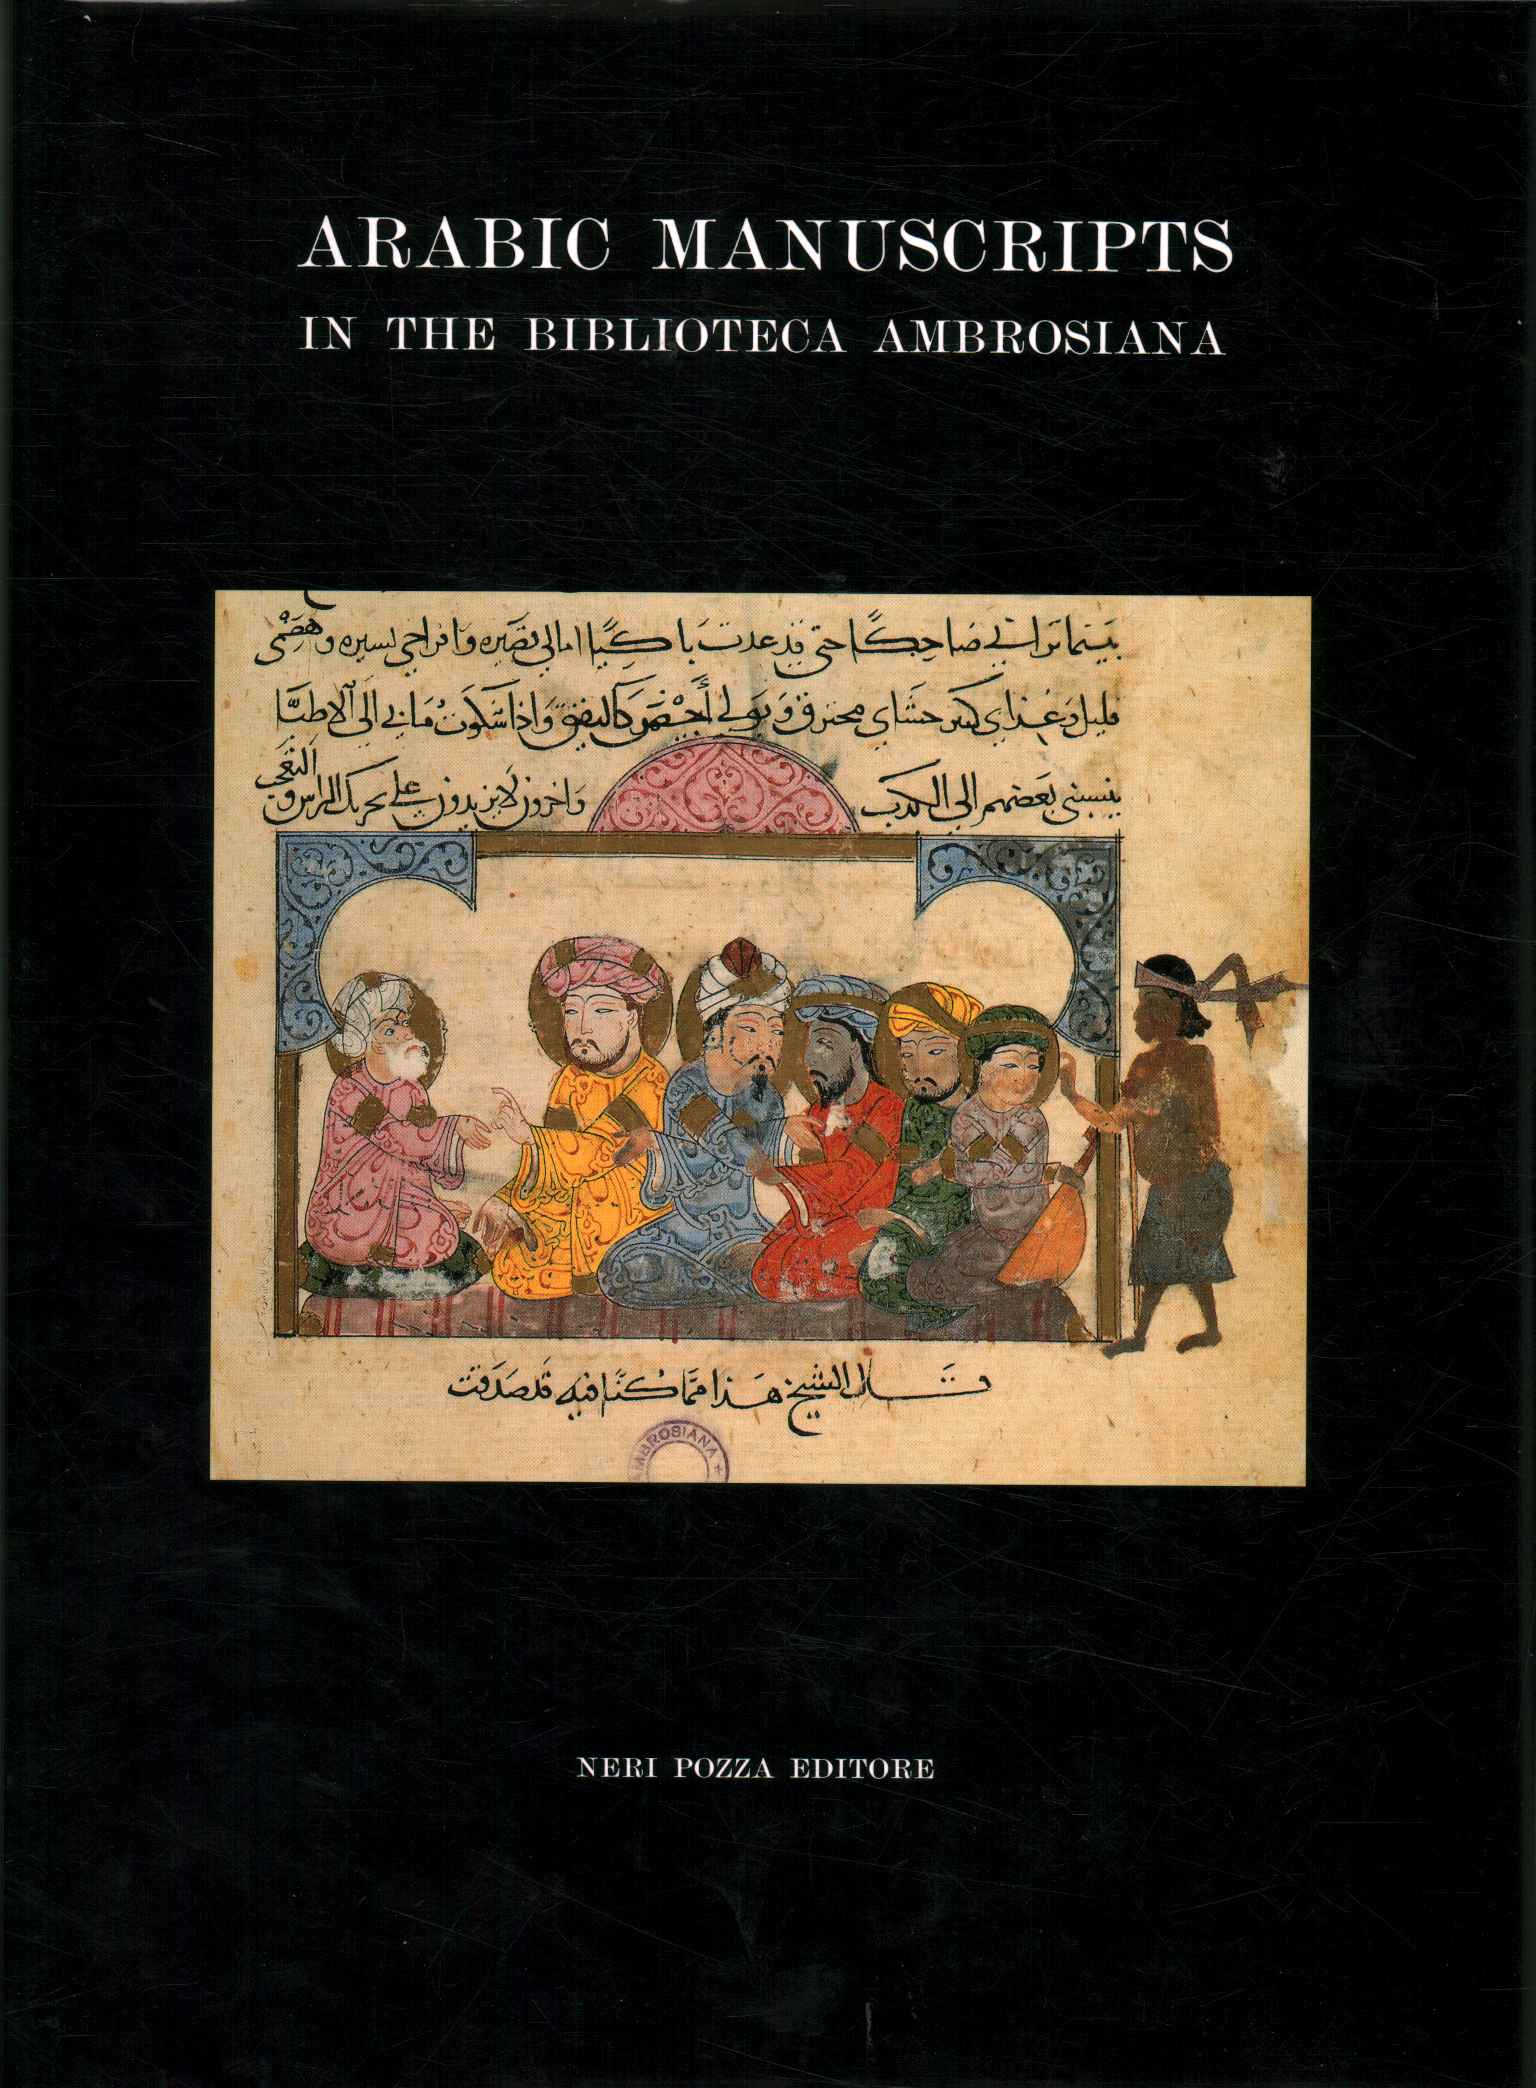 Katalog der arabischen Manuskripte in %2,Katalog der arabischen Manuskripte in %2